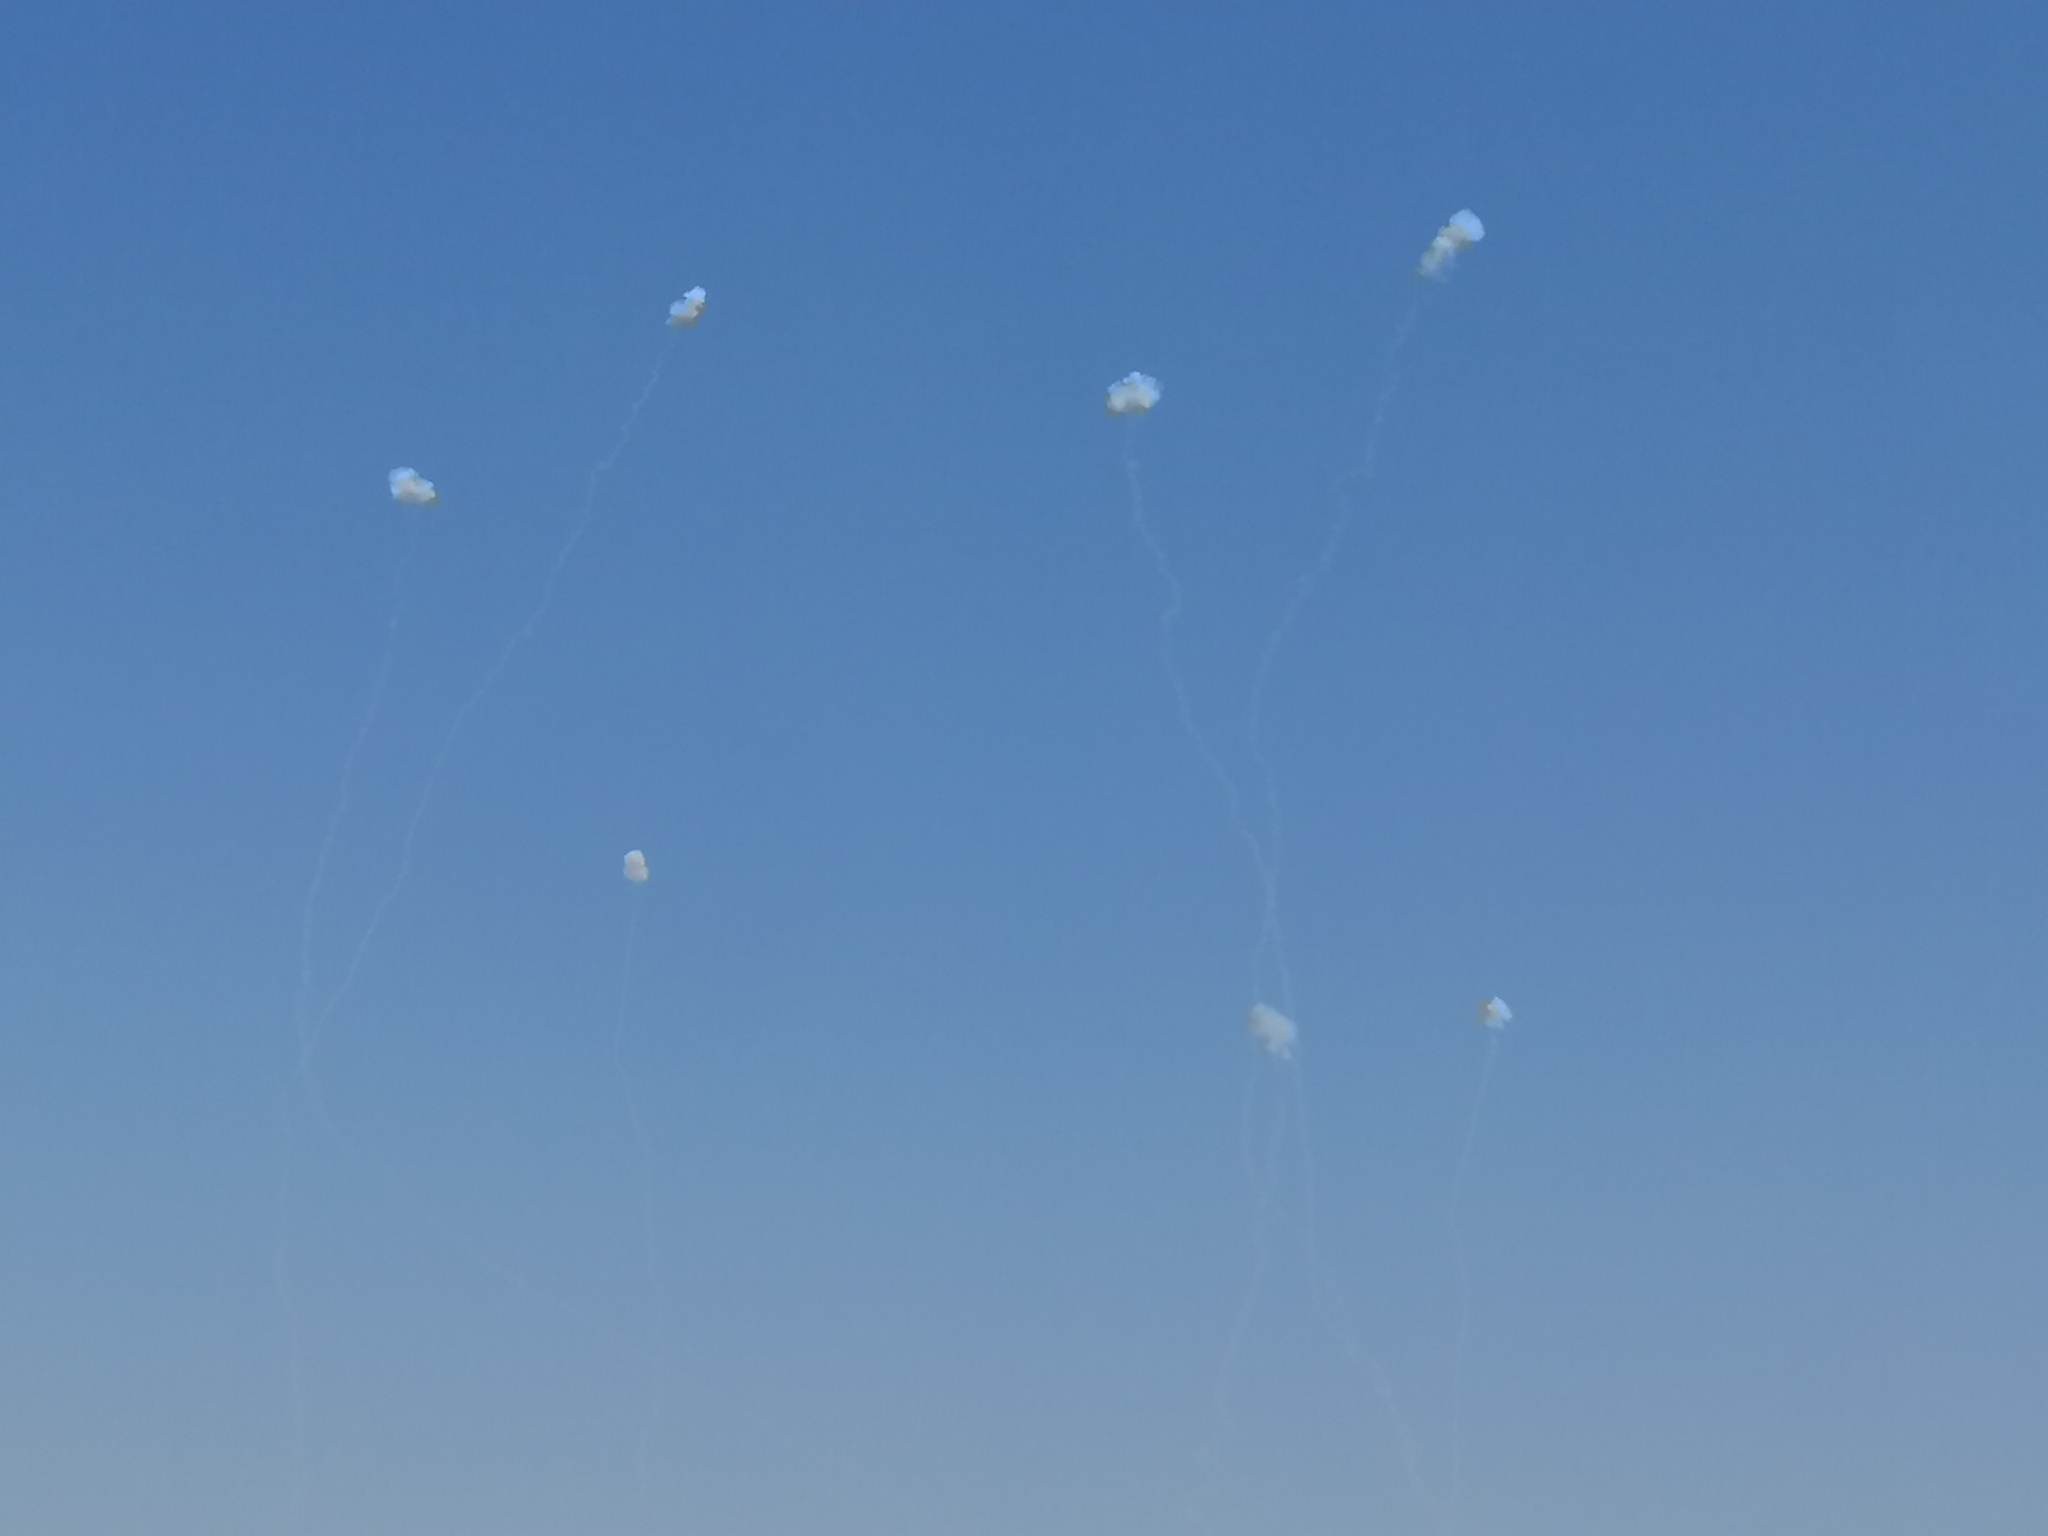 بالفيديو والصور: إطلاق رشقات صاروخية من غزّة باتجاه تل أبيب ومستوطنات الغلاف